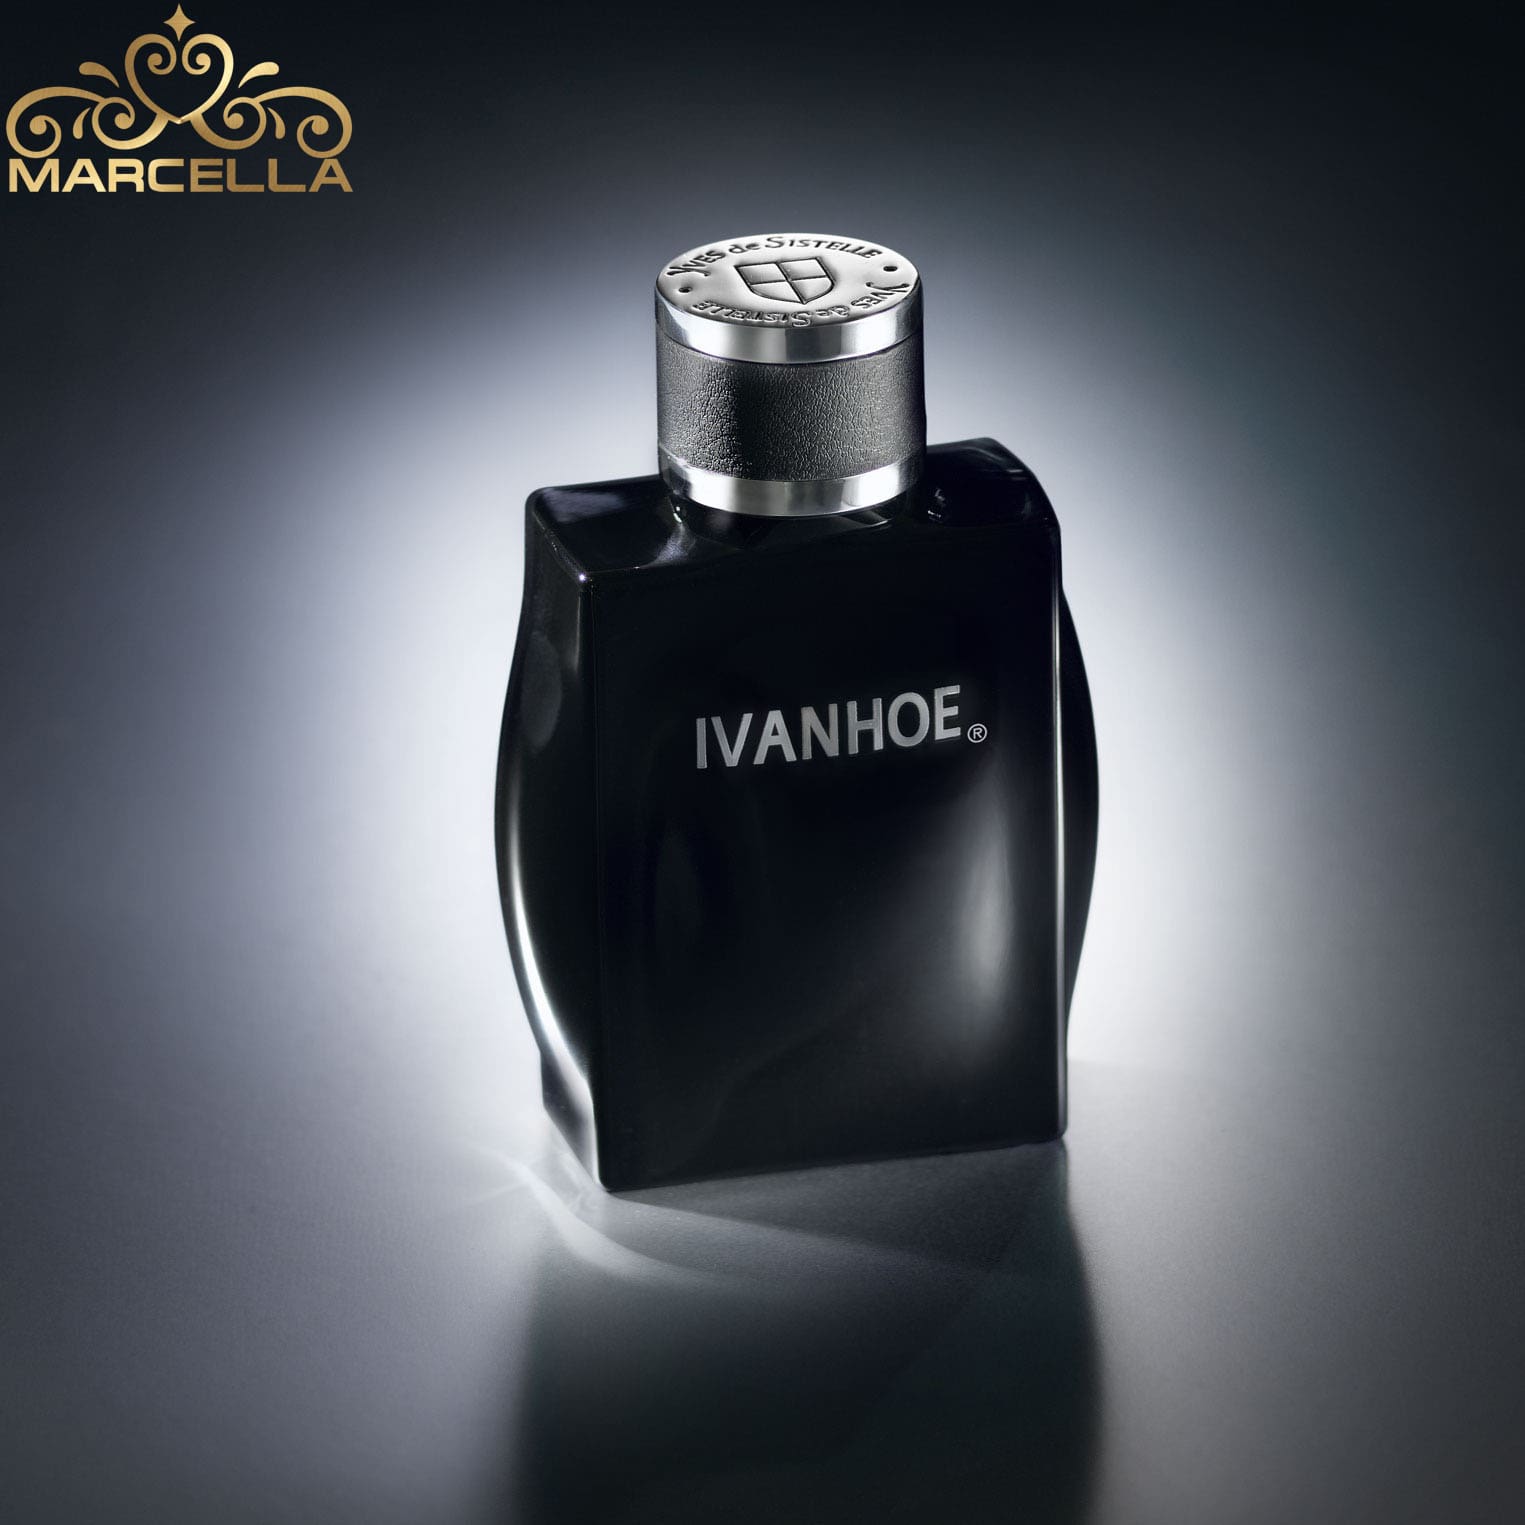 بررسی ، مشاهده قیمت و خرید عطر ادکلن ایوانهو مشکی مردانه Yves de Sistelle Ivanhoe اصل